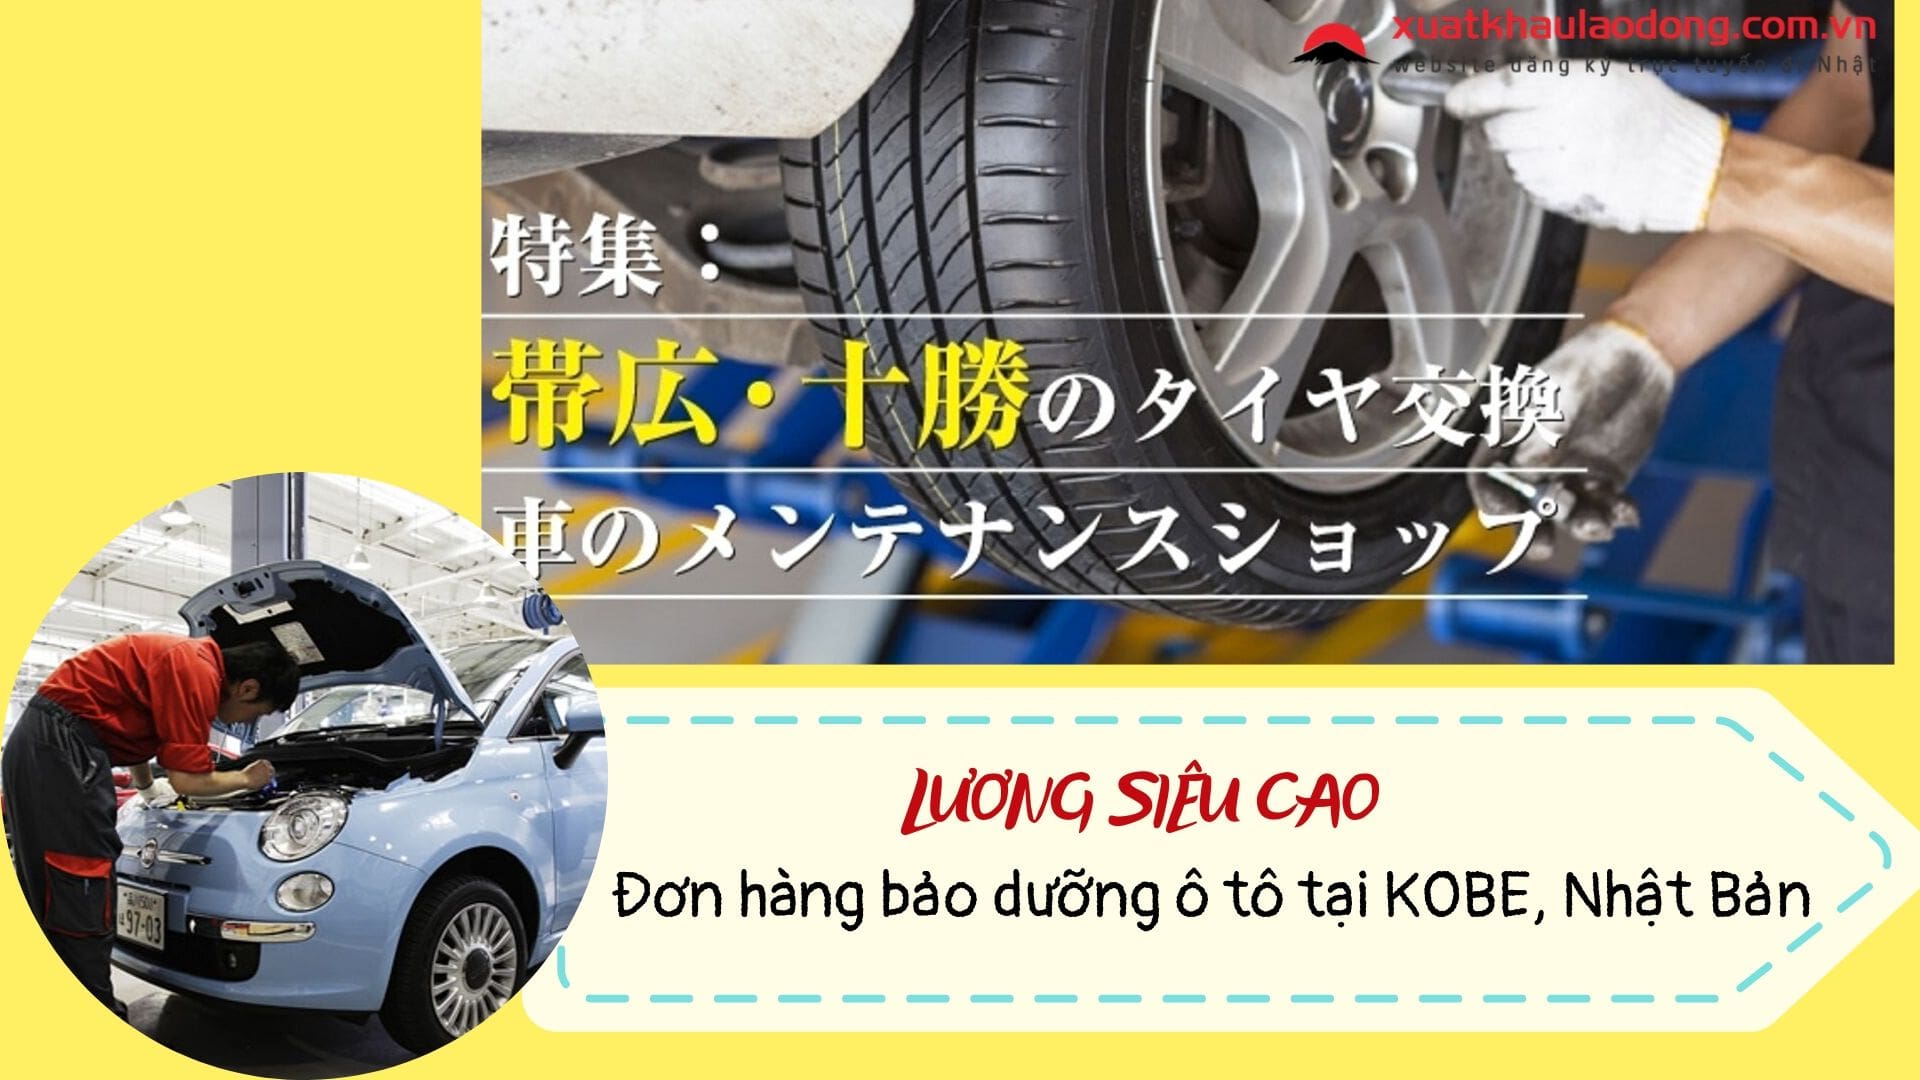 Đơn hàng bảo dưỡng ô tô tại Kobe